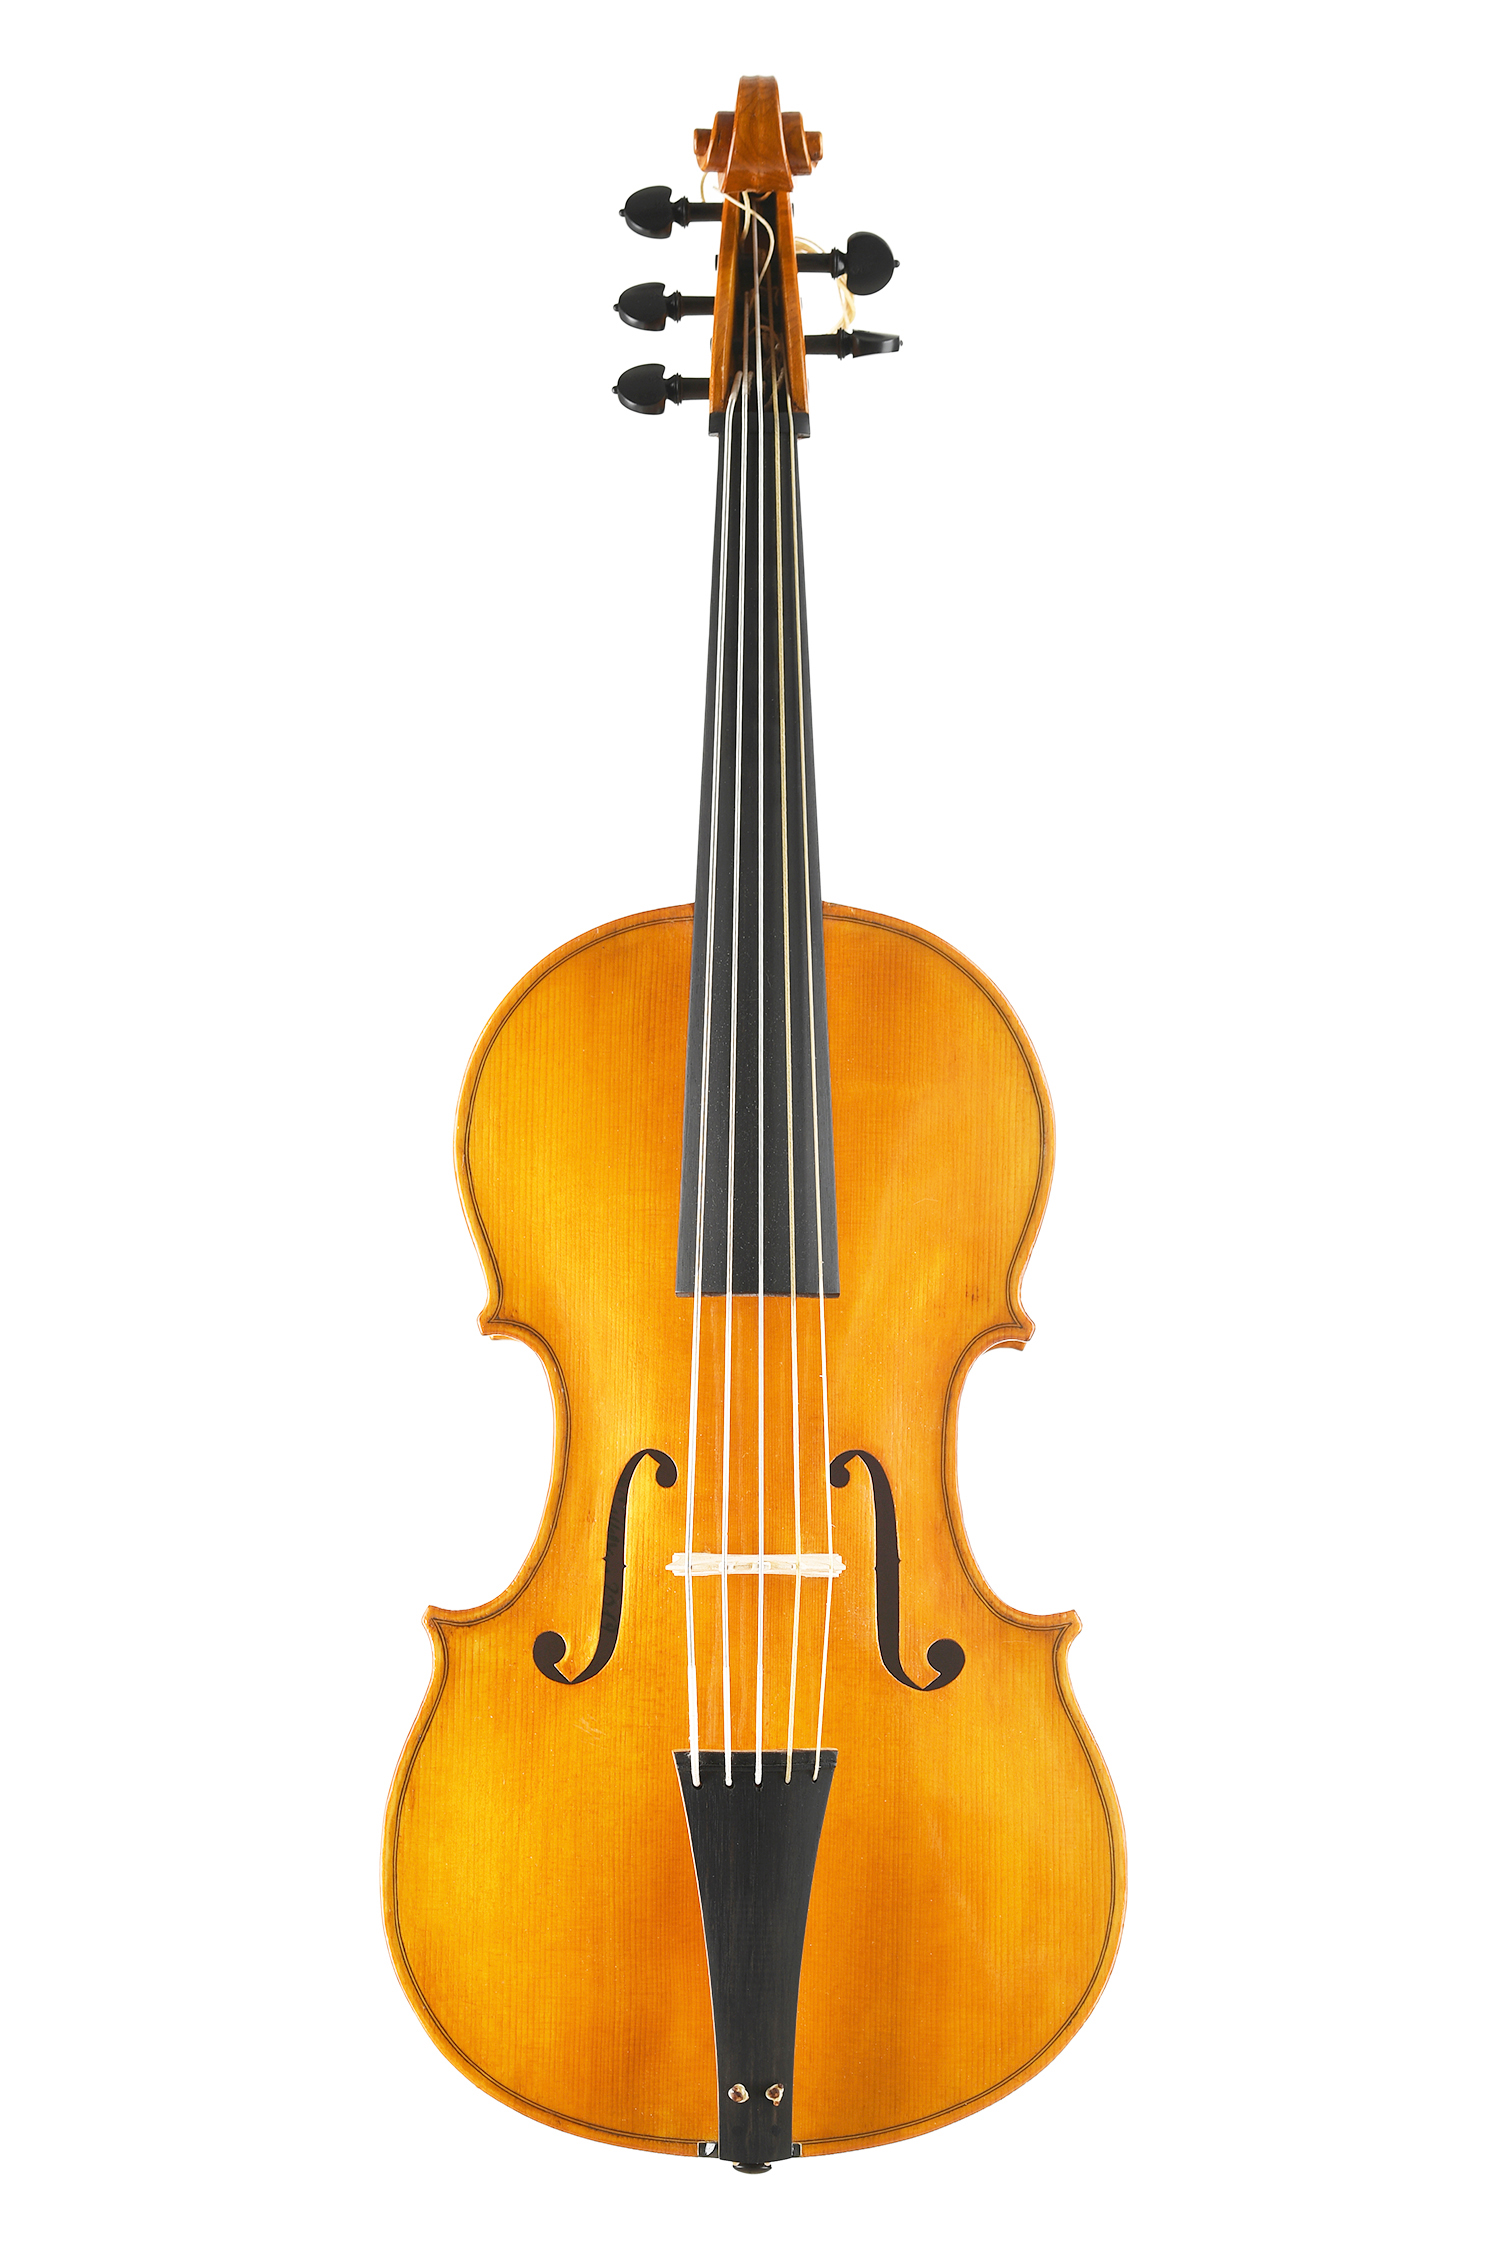 violoncello da spalla modello Badiarov alessandro visintini meltina